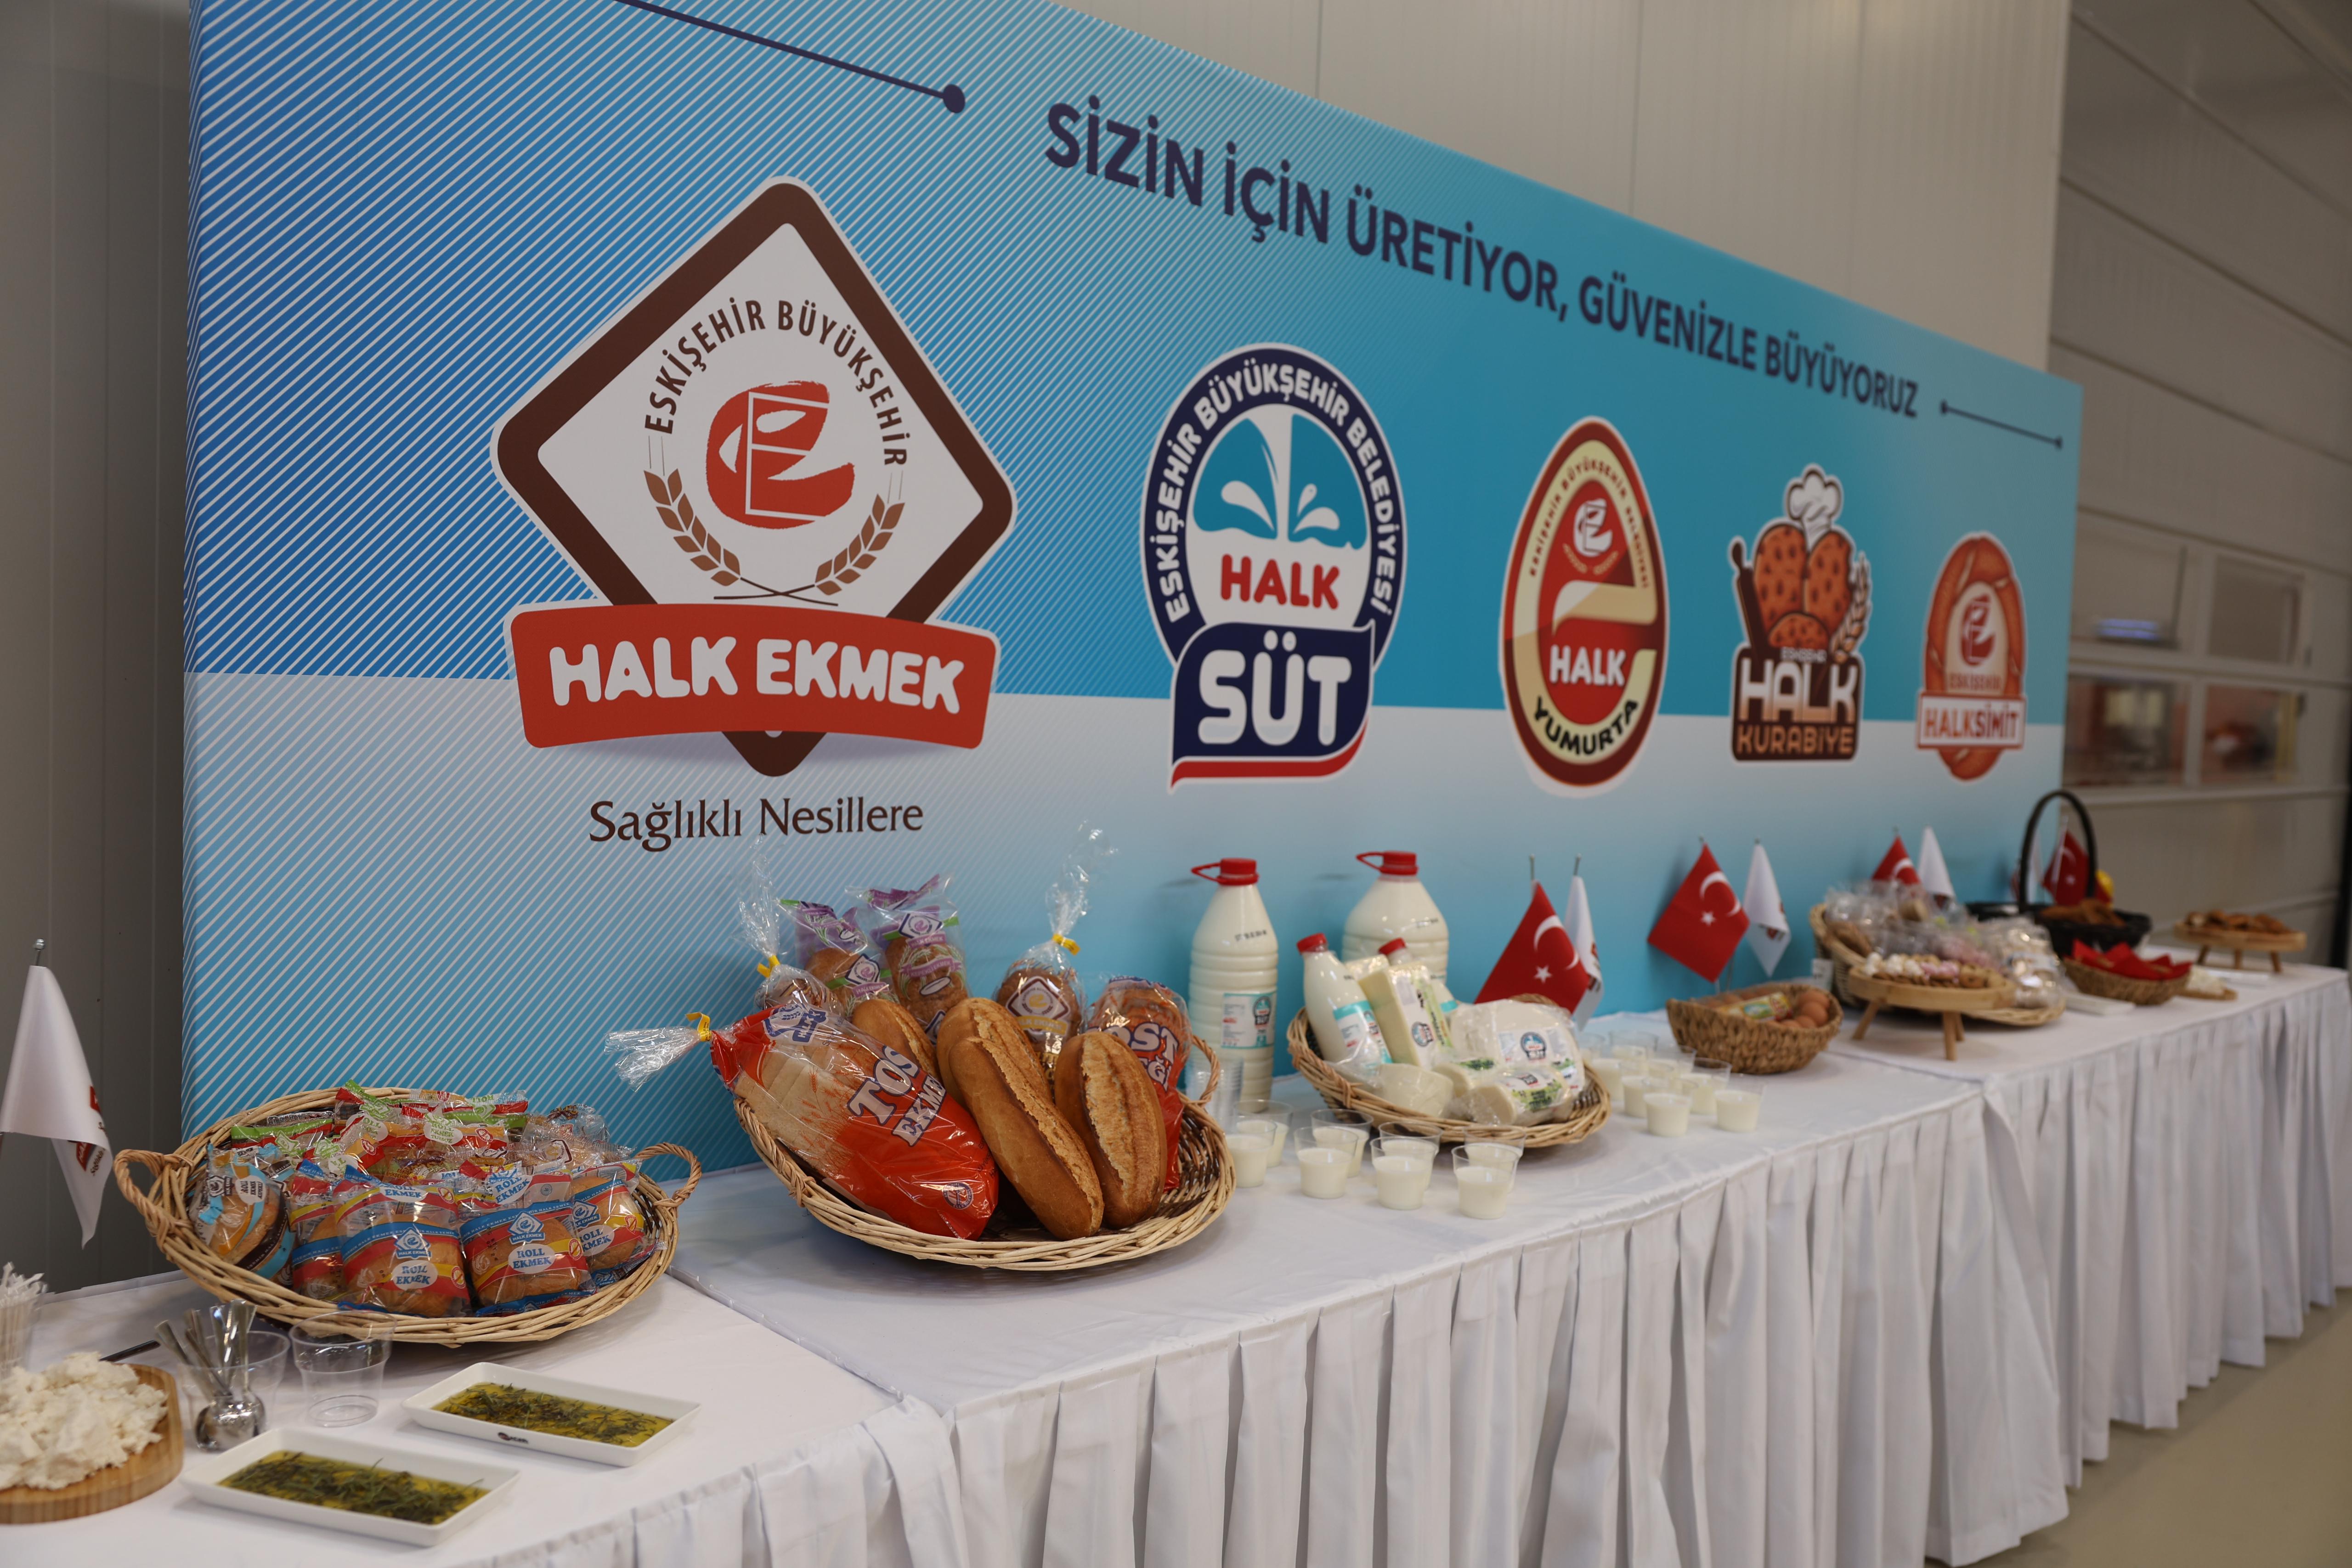 Eskişehir’de “Halk Ekmek Unlu Mamuller Fabrikası” hizmete açıldı